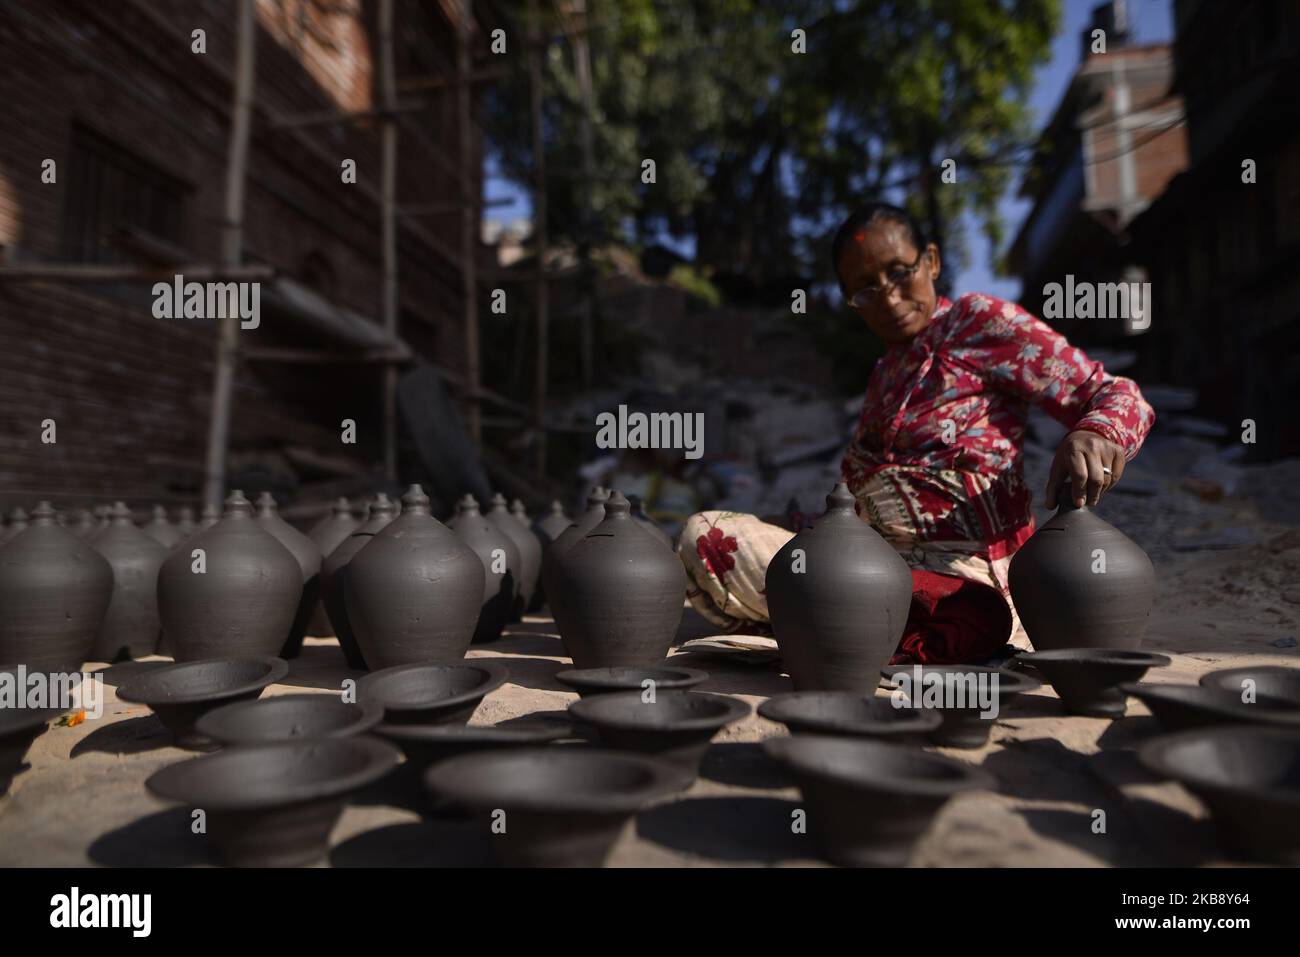 Eine Frau, die Tontopf in ihrer Werkstatt am Pottery Square, Bhaktapur, Nepal, am Dienstag, den 22. Oktober 2019, herstellte. Nepalese Potter arbeitet an ihrer traditionellen Töpferei in kleinem Maßstab in Bhaktapur, Nepal. Bhaktapur ist eine alte Stadt im Kathmandu Valley und wird aufgrund seiner reichen Kultur, Tempel und Holz-, Metall- und Steinkunst von der UNESCO zum Weltkulturerbe erklärt. (Foto von Narayan Maharjan/NurPhoto) Stockfoto